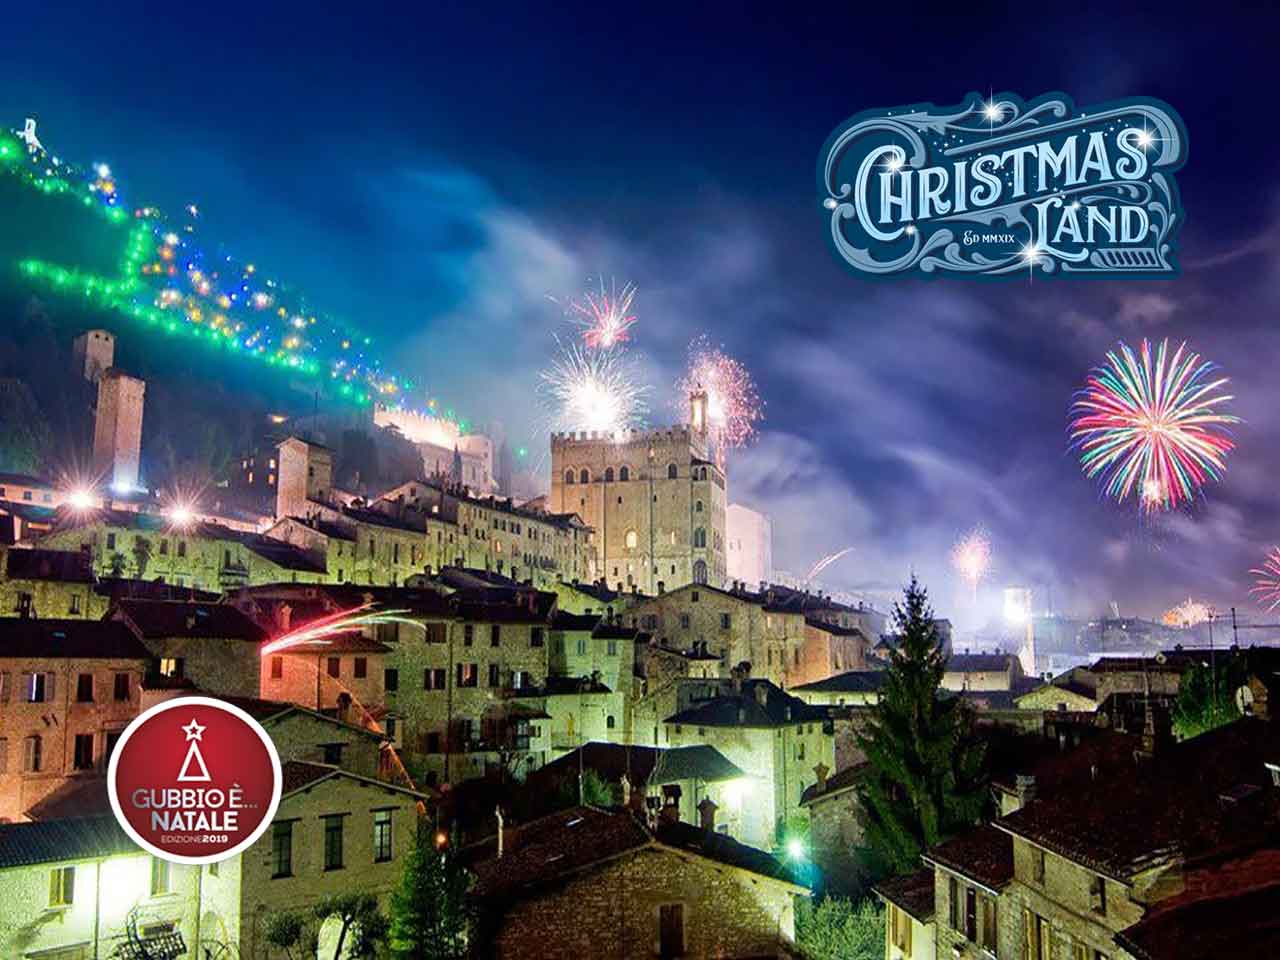 Albero Di Natale Gubbio 2019.Raduno Albero Da Record E Christmasland Gubbio E Natale Pleinairclub